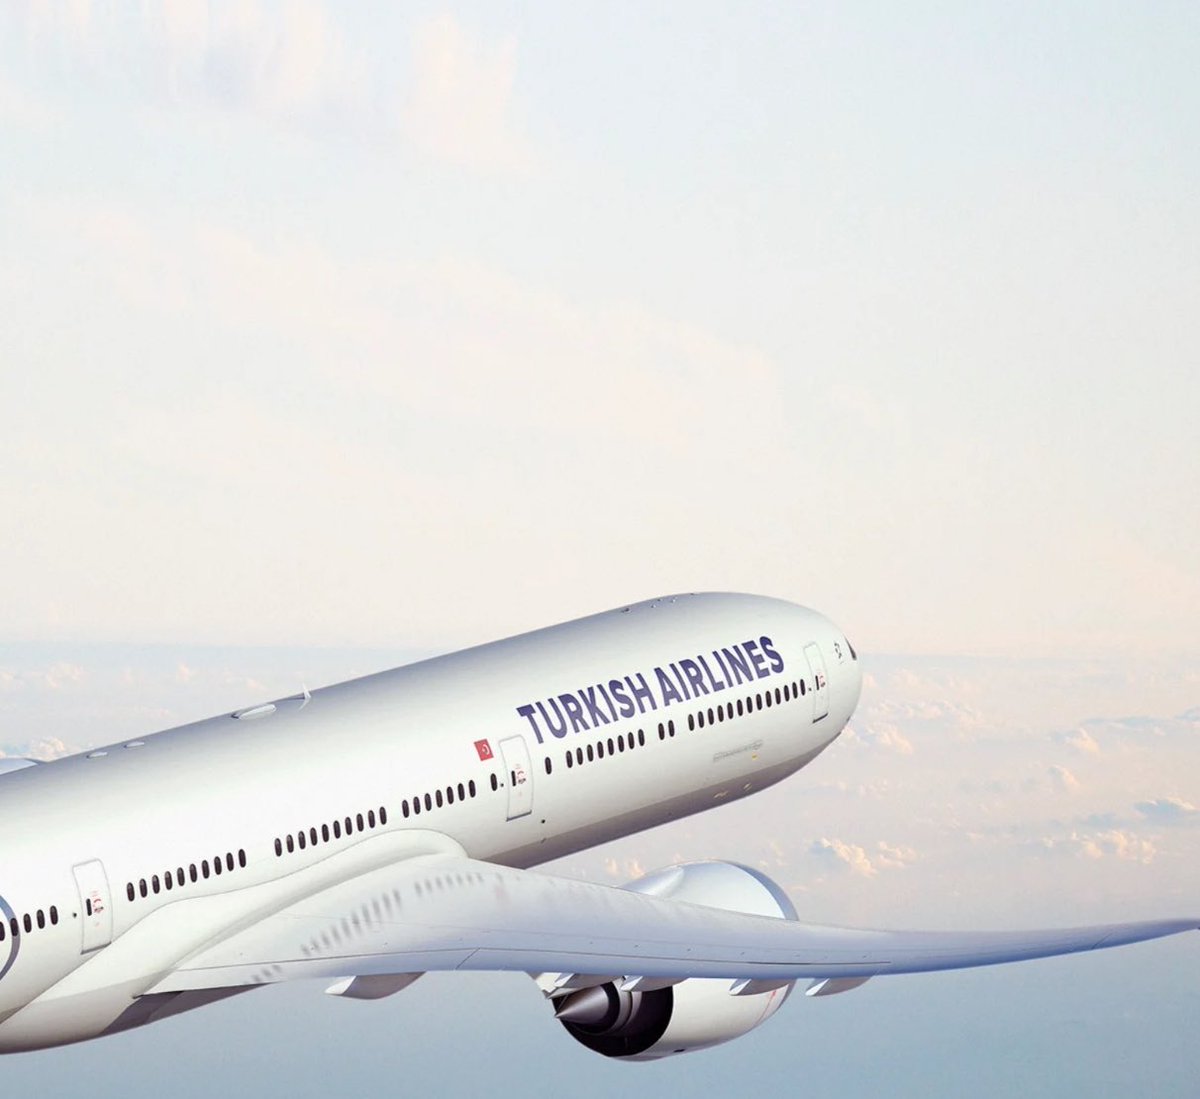 Türk Hava Yolları’nın sipariş etmeyi planladığı modeller arasında Boeing 777X de yer alıyor. 

Boeing 777-9, THY filosunda bulunan B787 uçaklarından 114, B777-300ER uçaklarından 65 daha fazla koltuk sunuyor. Sipariş tarihi ise giderek yaklaşıyor